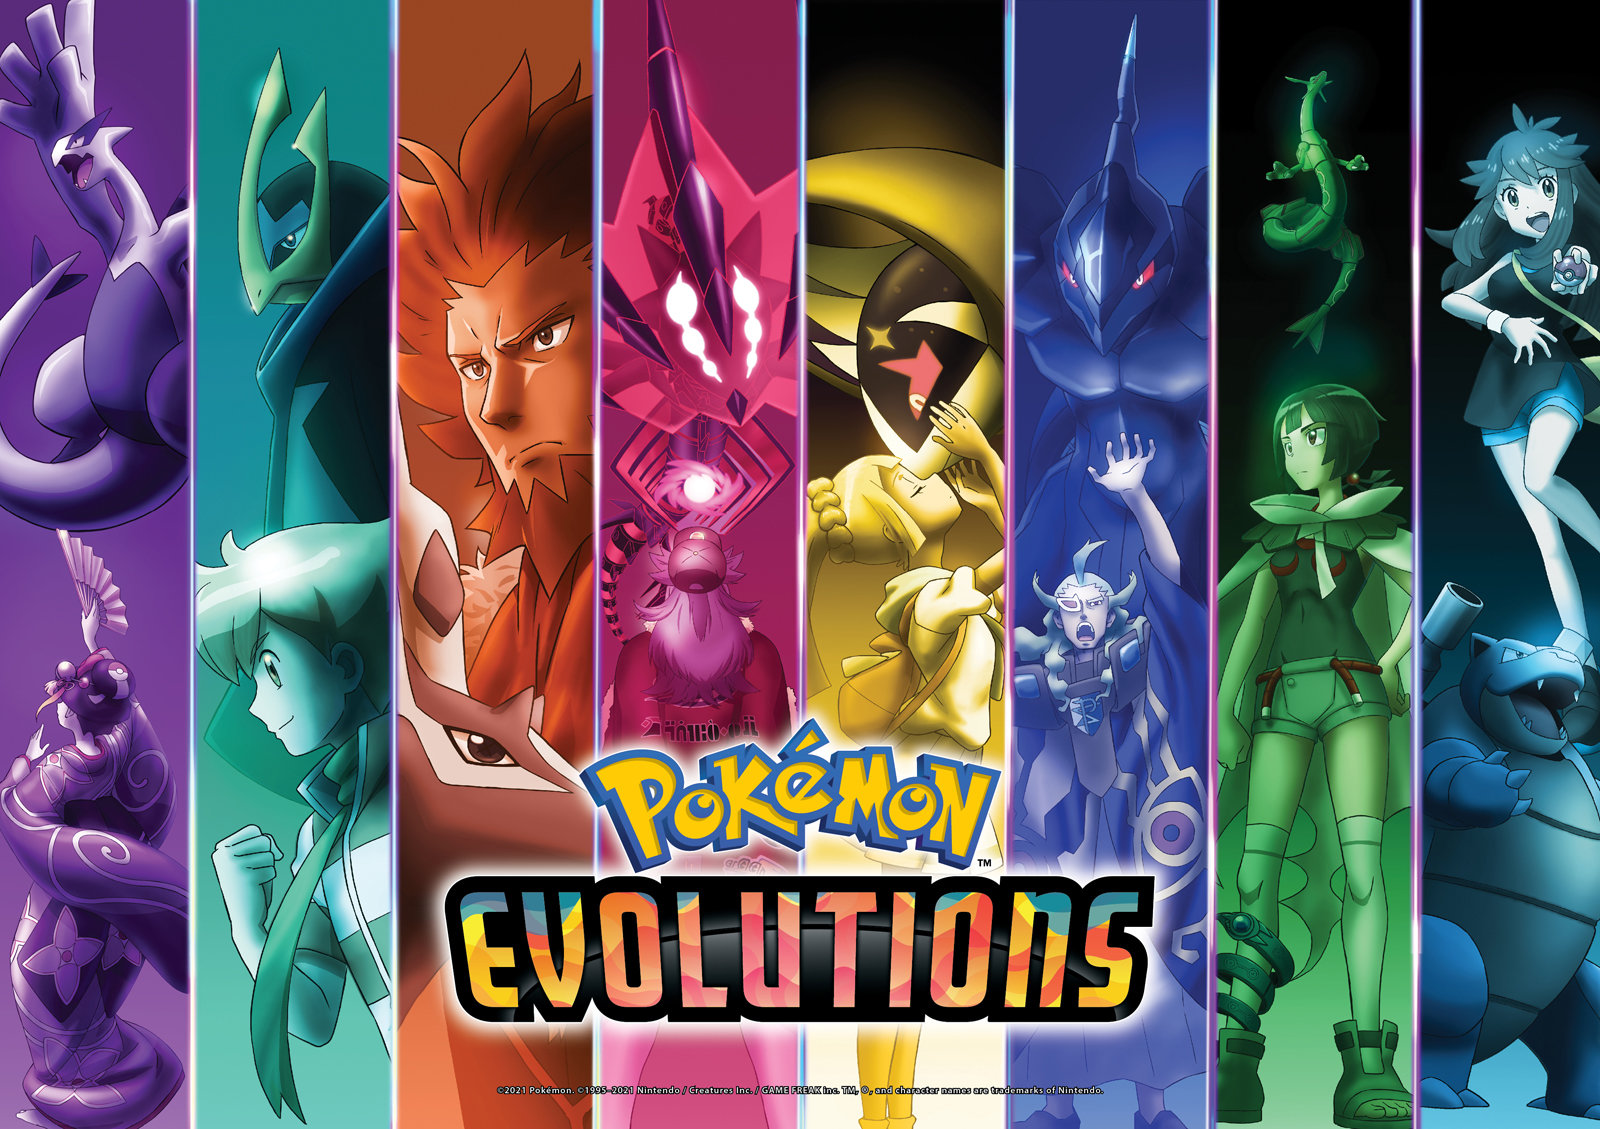 ポケモン25周年記念アニメ Pokemon Evolutions が配信開始 第1話はガラル地方が舞台 1 2 ページ ねとらぼ